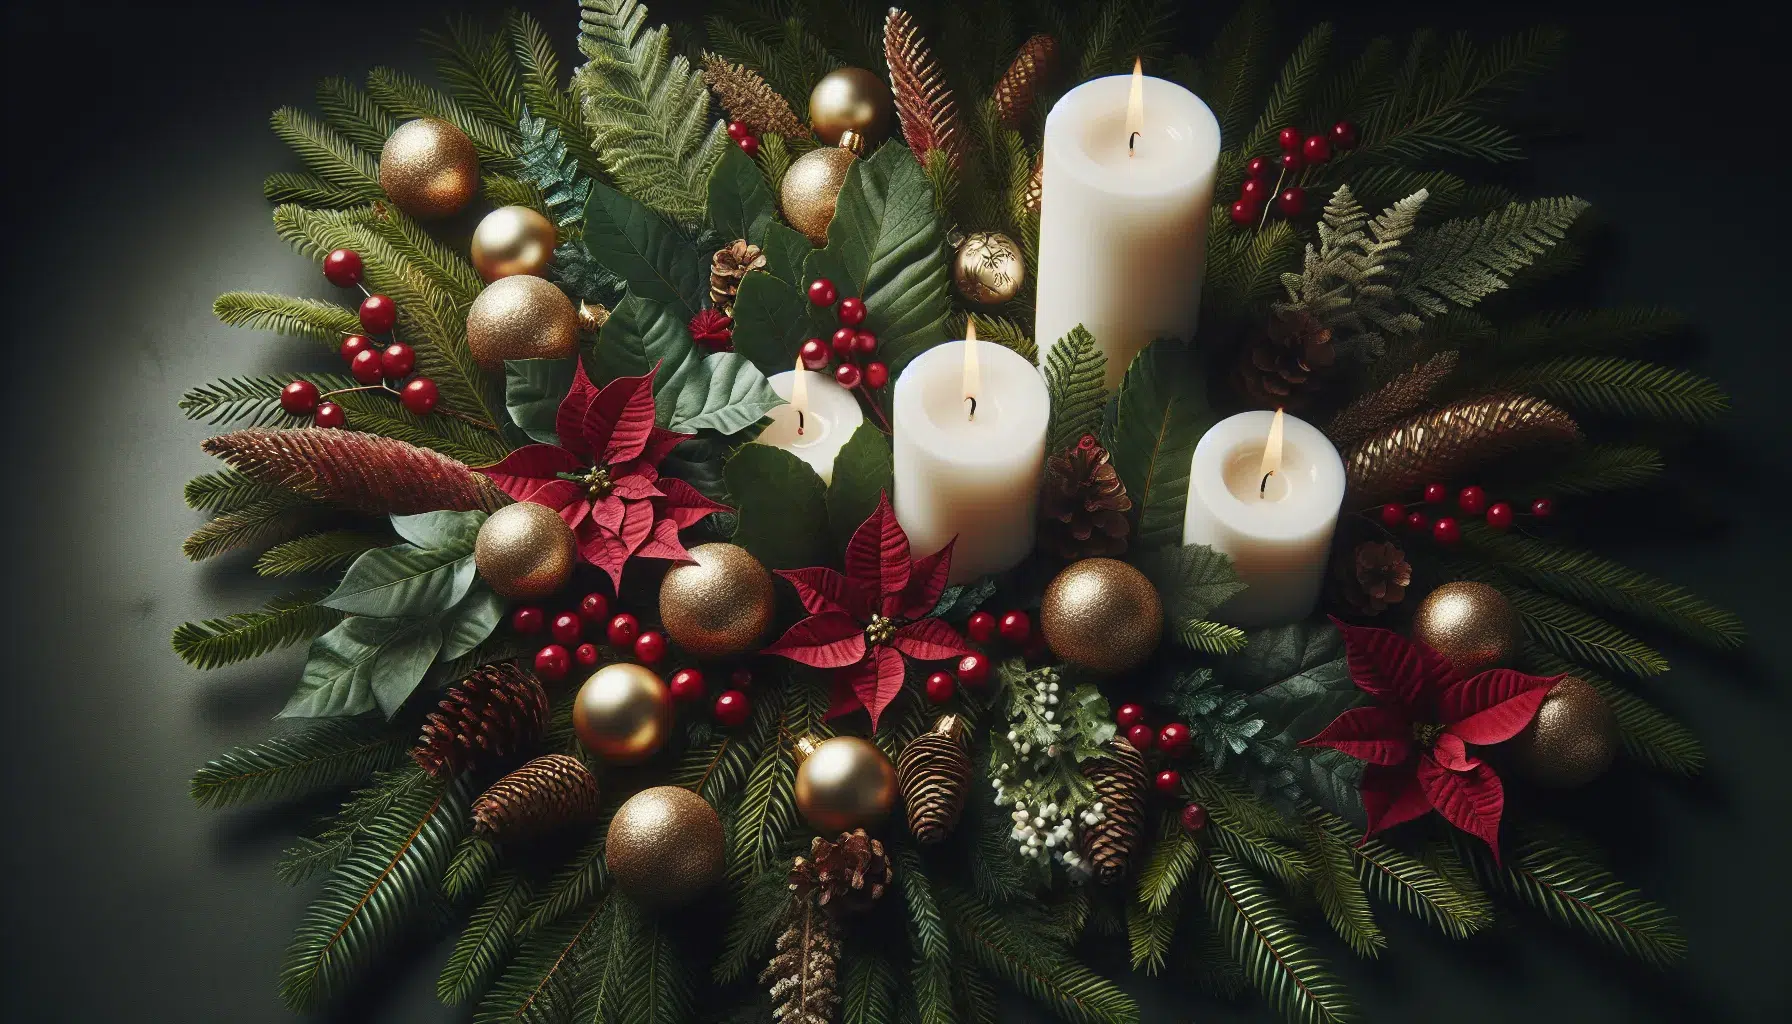 Propuesta para decorar con elegancia en Navidad usando plantas naturales.